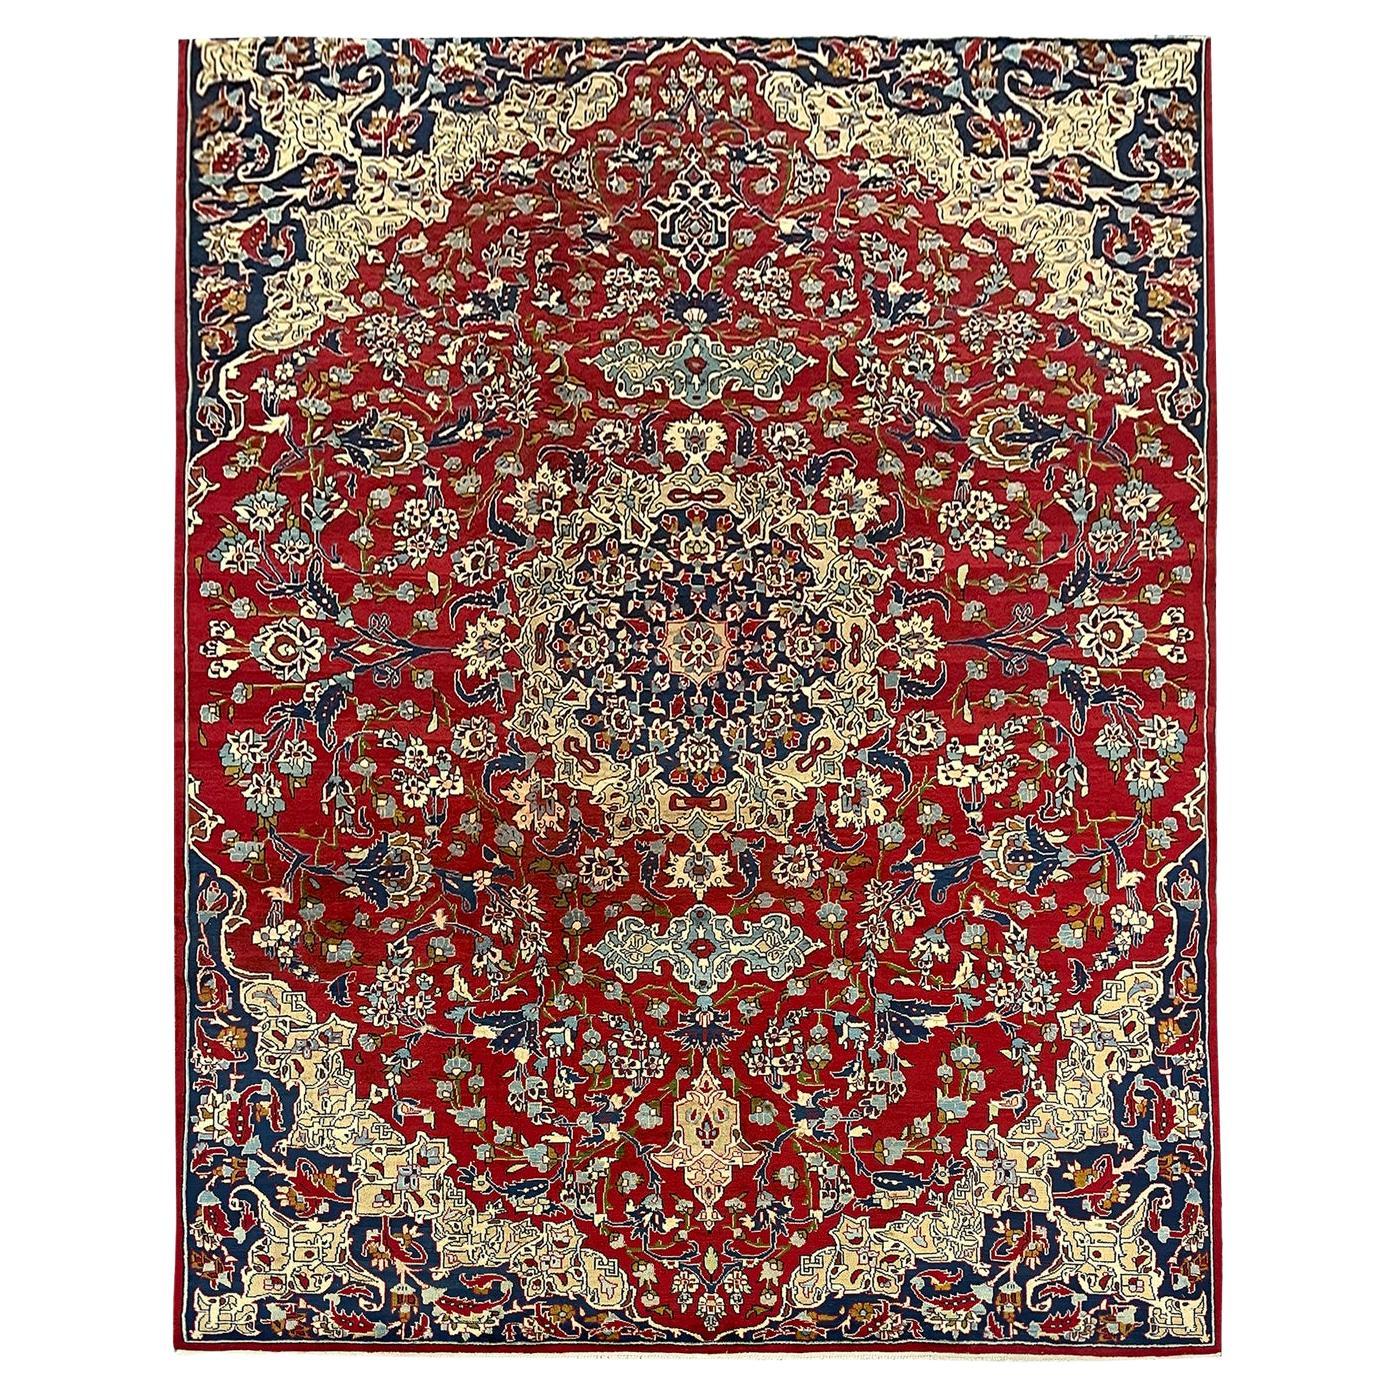 Prächtiger handgefertigter Vintage-Teppich aus geblümter roter Wolle, orientalischer Wohnzimmerteppich